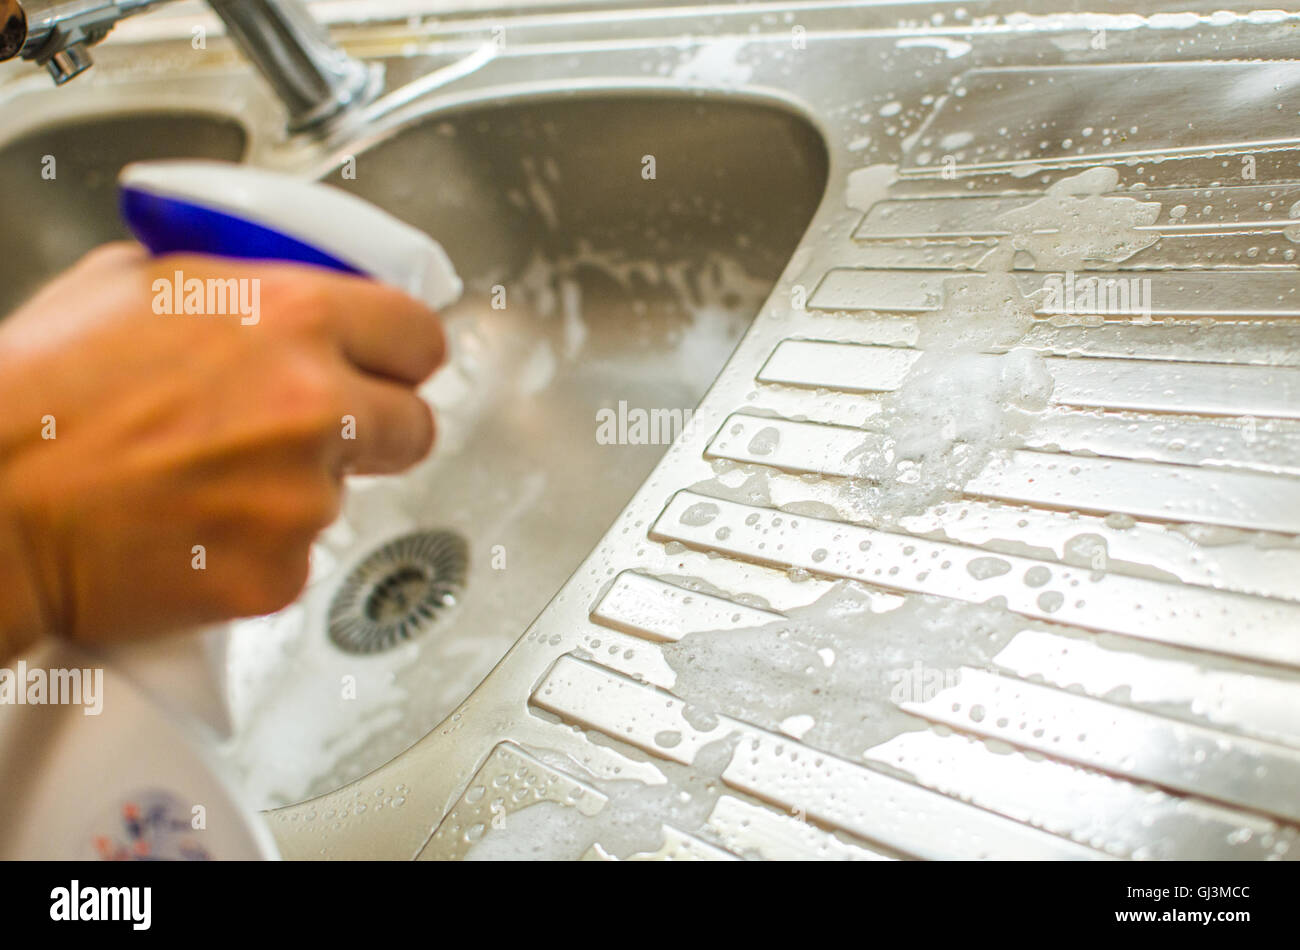 hand spray detergent on kitchen sink chores housekeeping Stock Photo